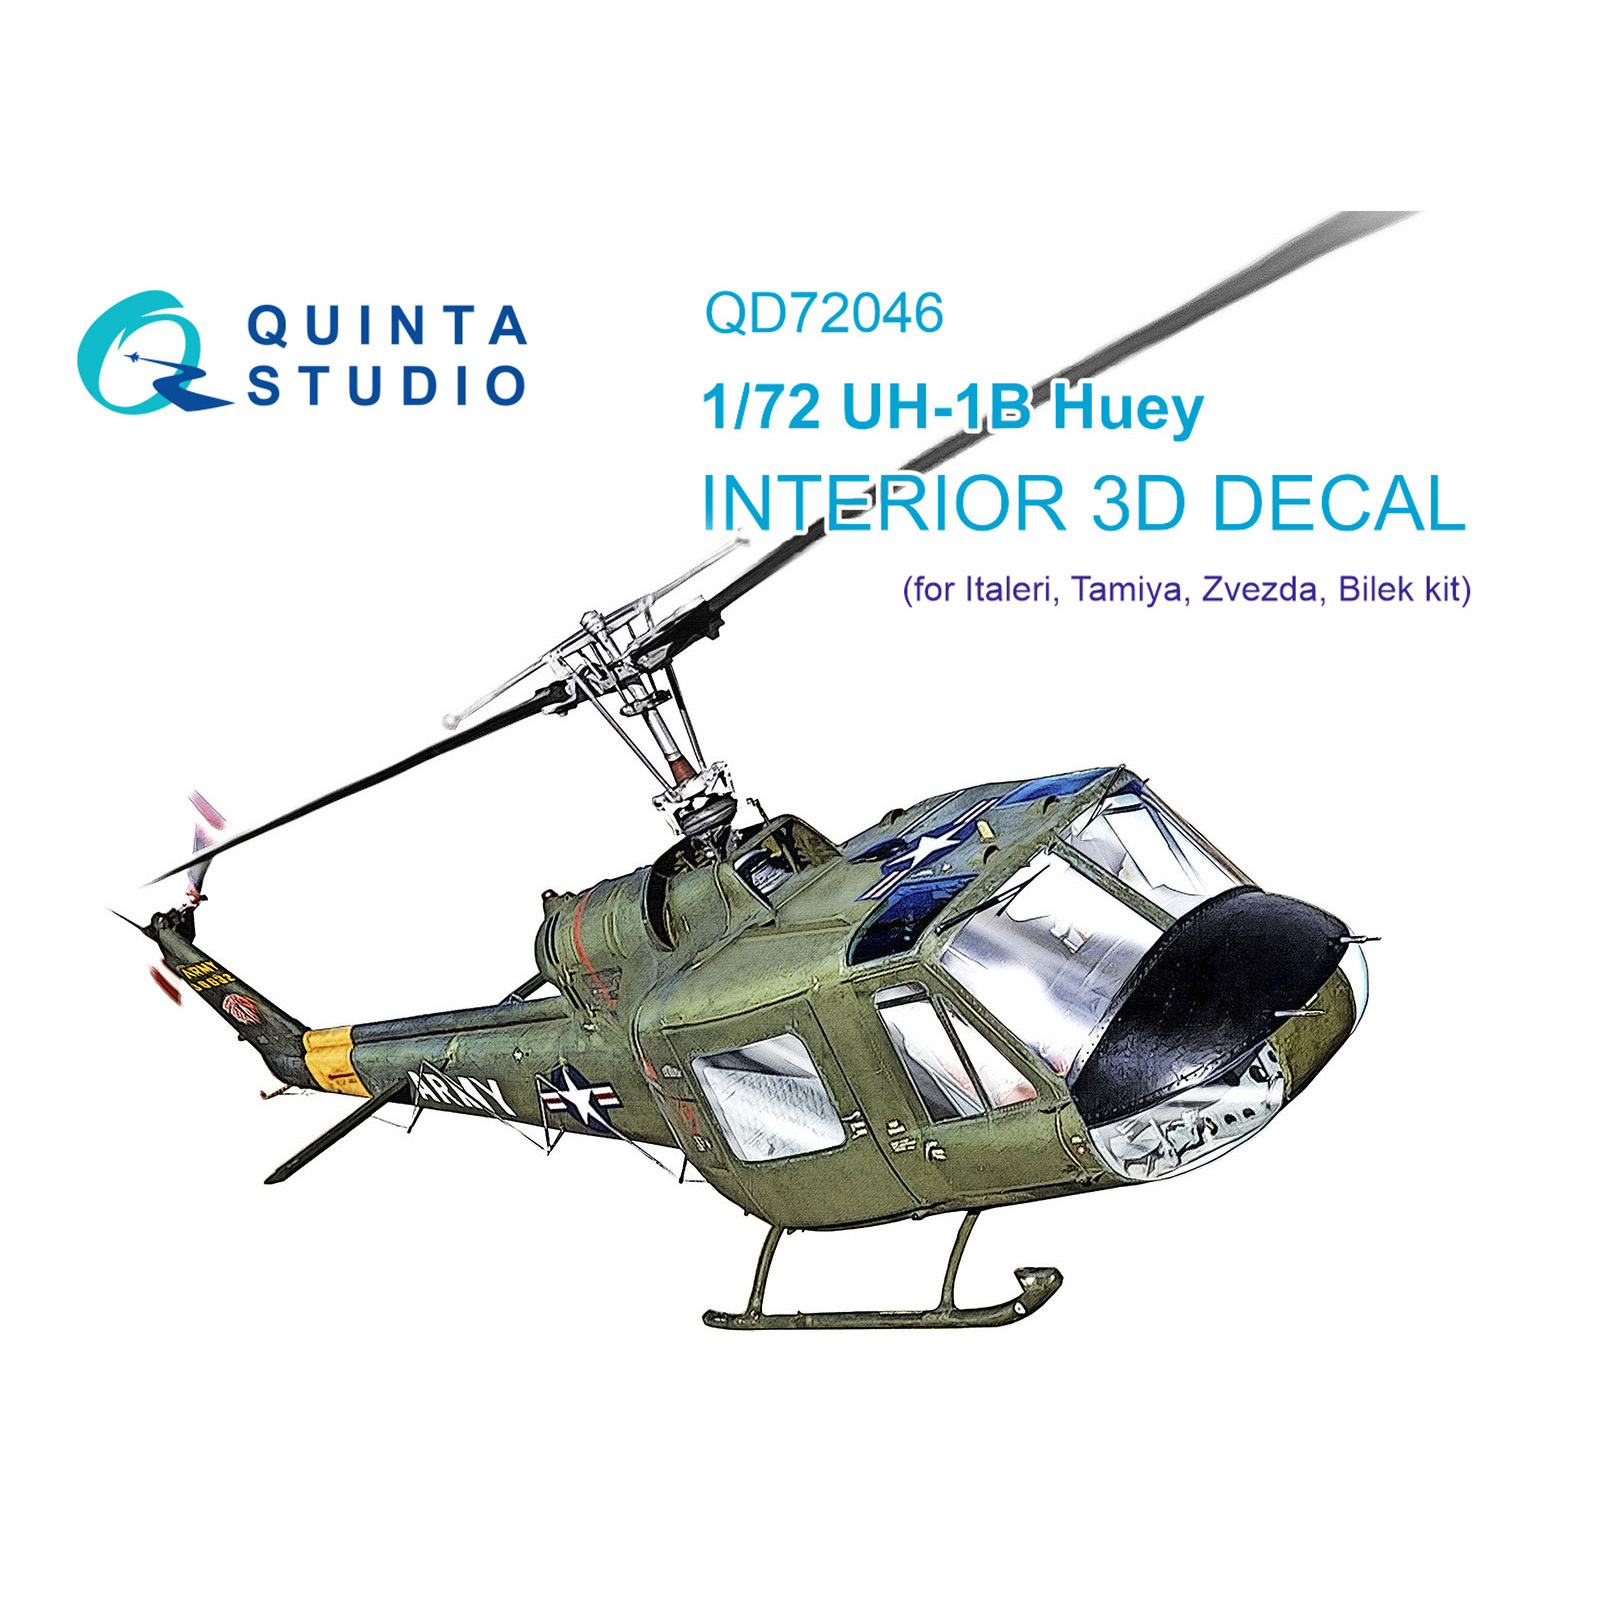 QD72046 Quinta Studio 1/72 3D Cabin Interior Decal Uh-1B (Italeri)